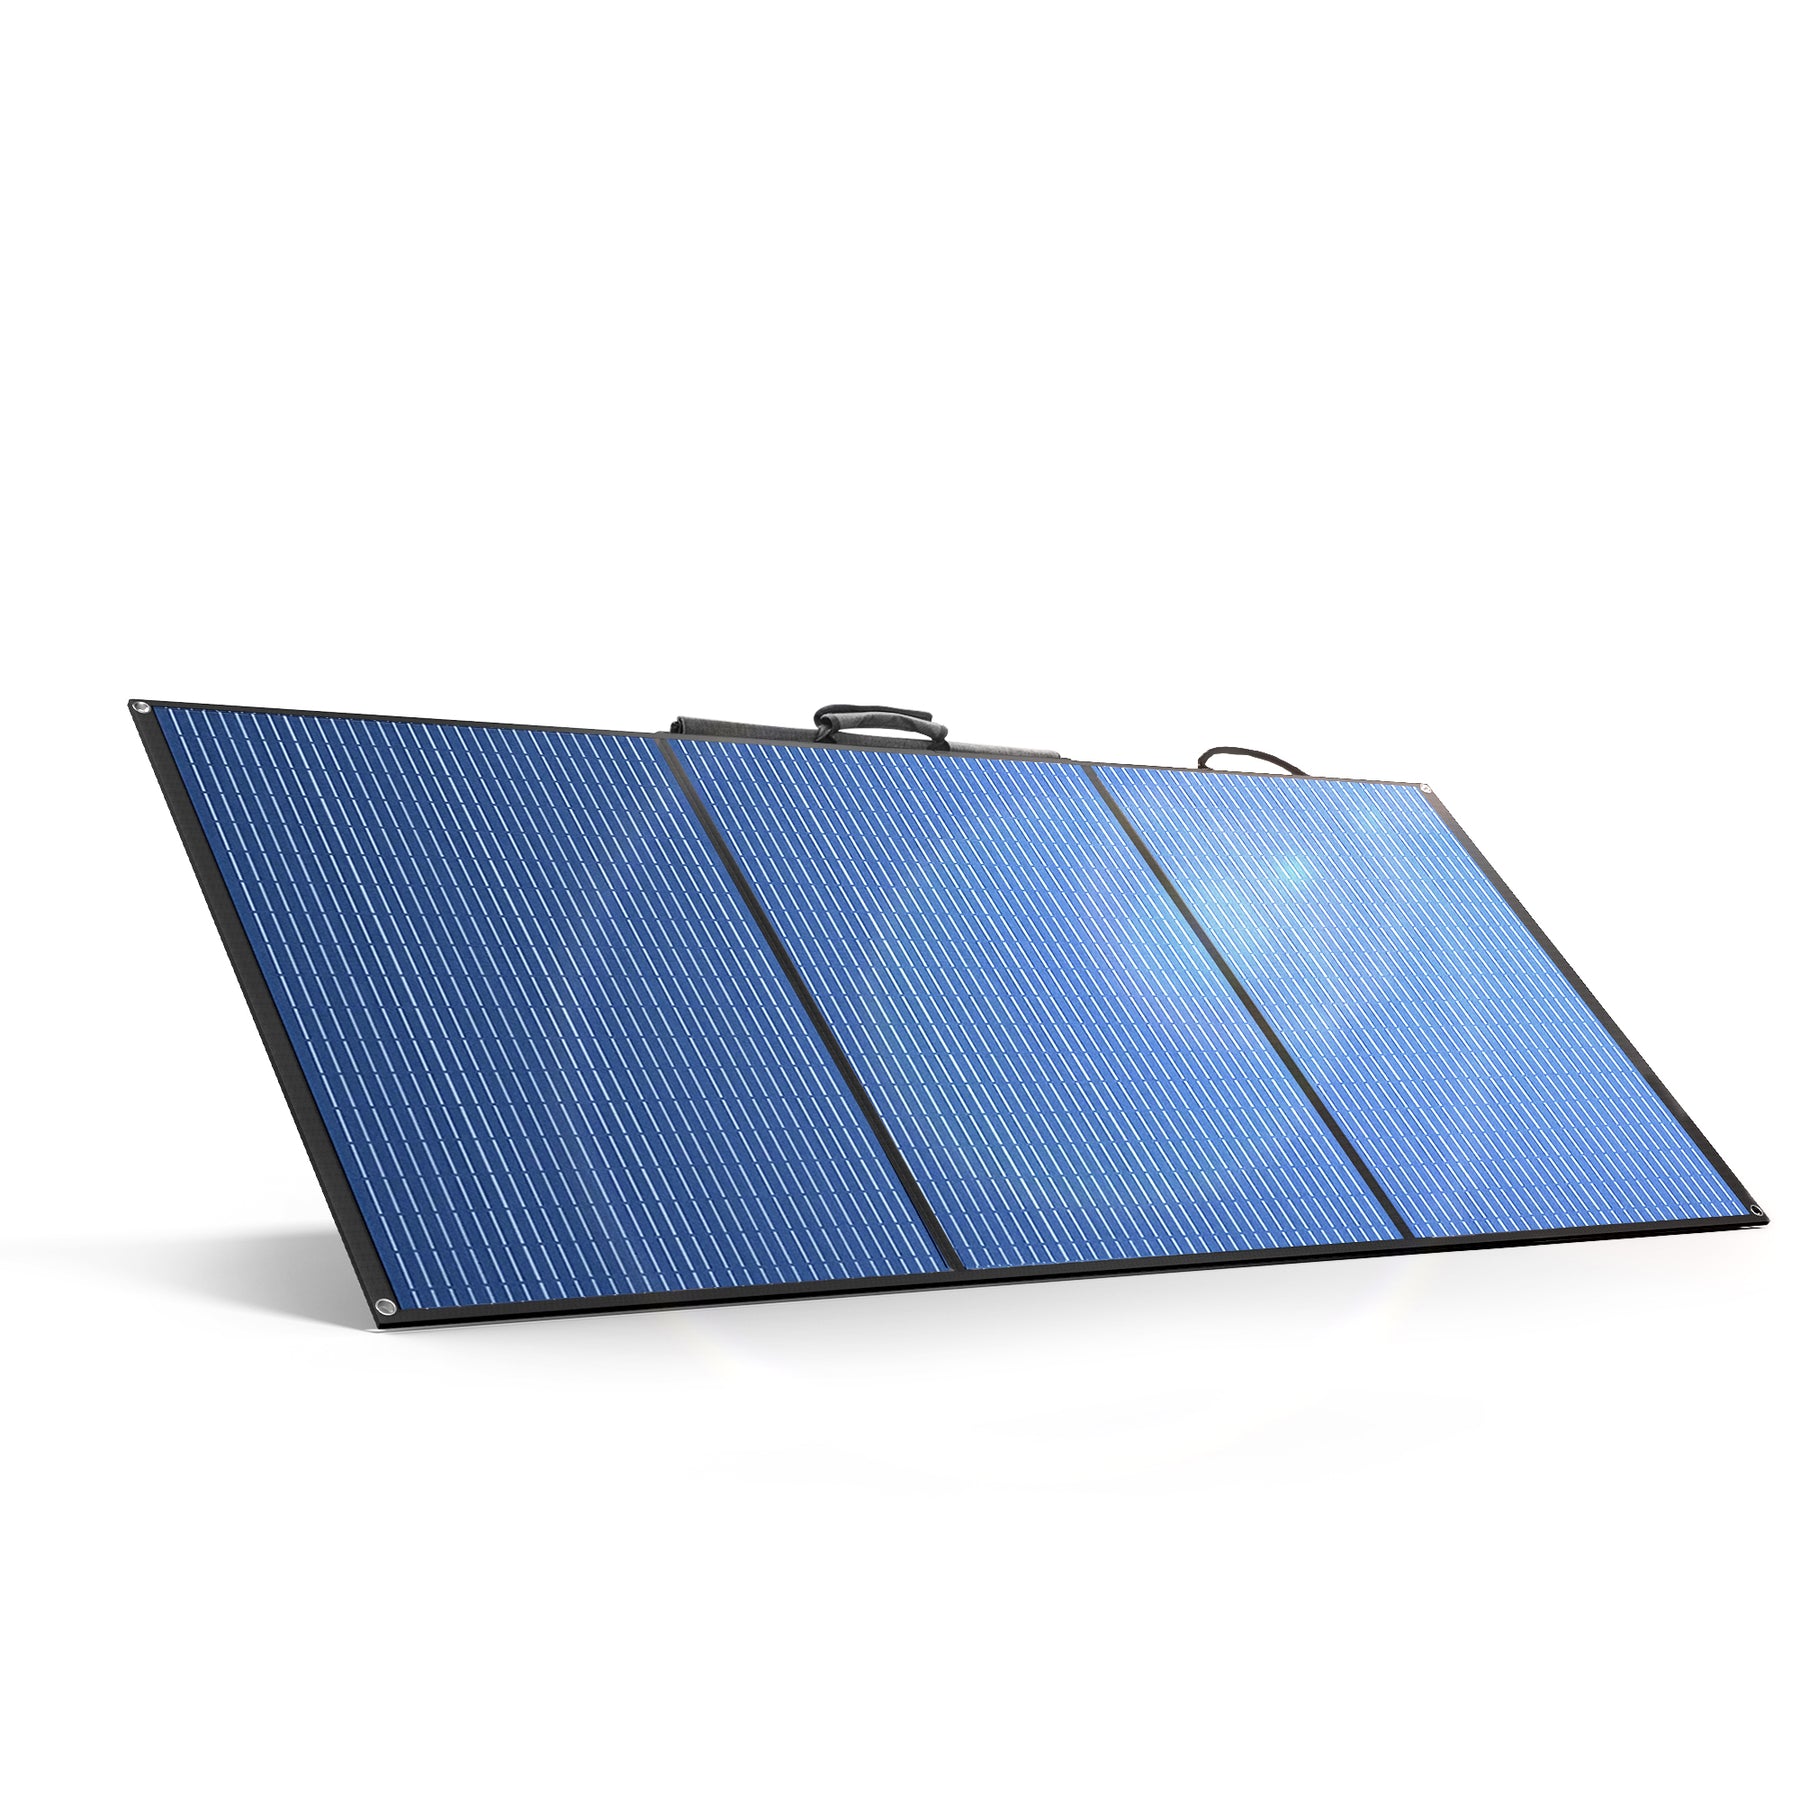 100W/200W Solar Panel | SX100/SX200